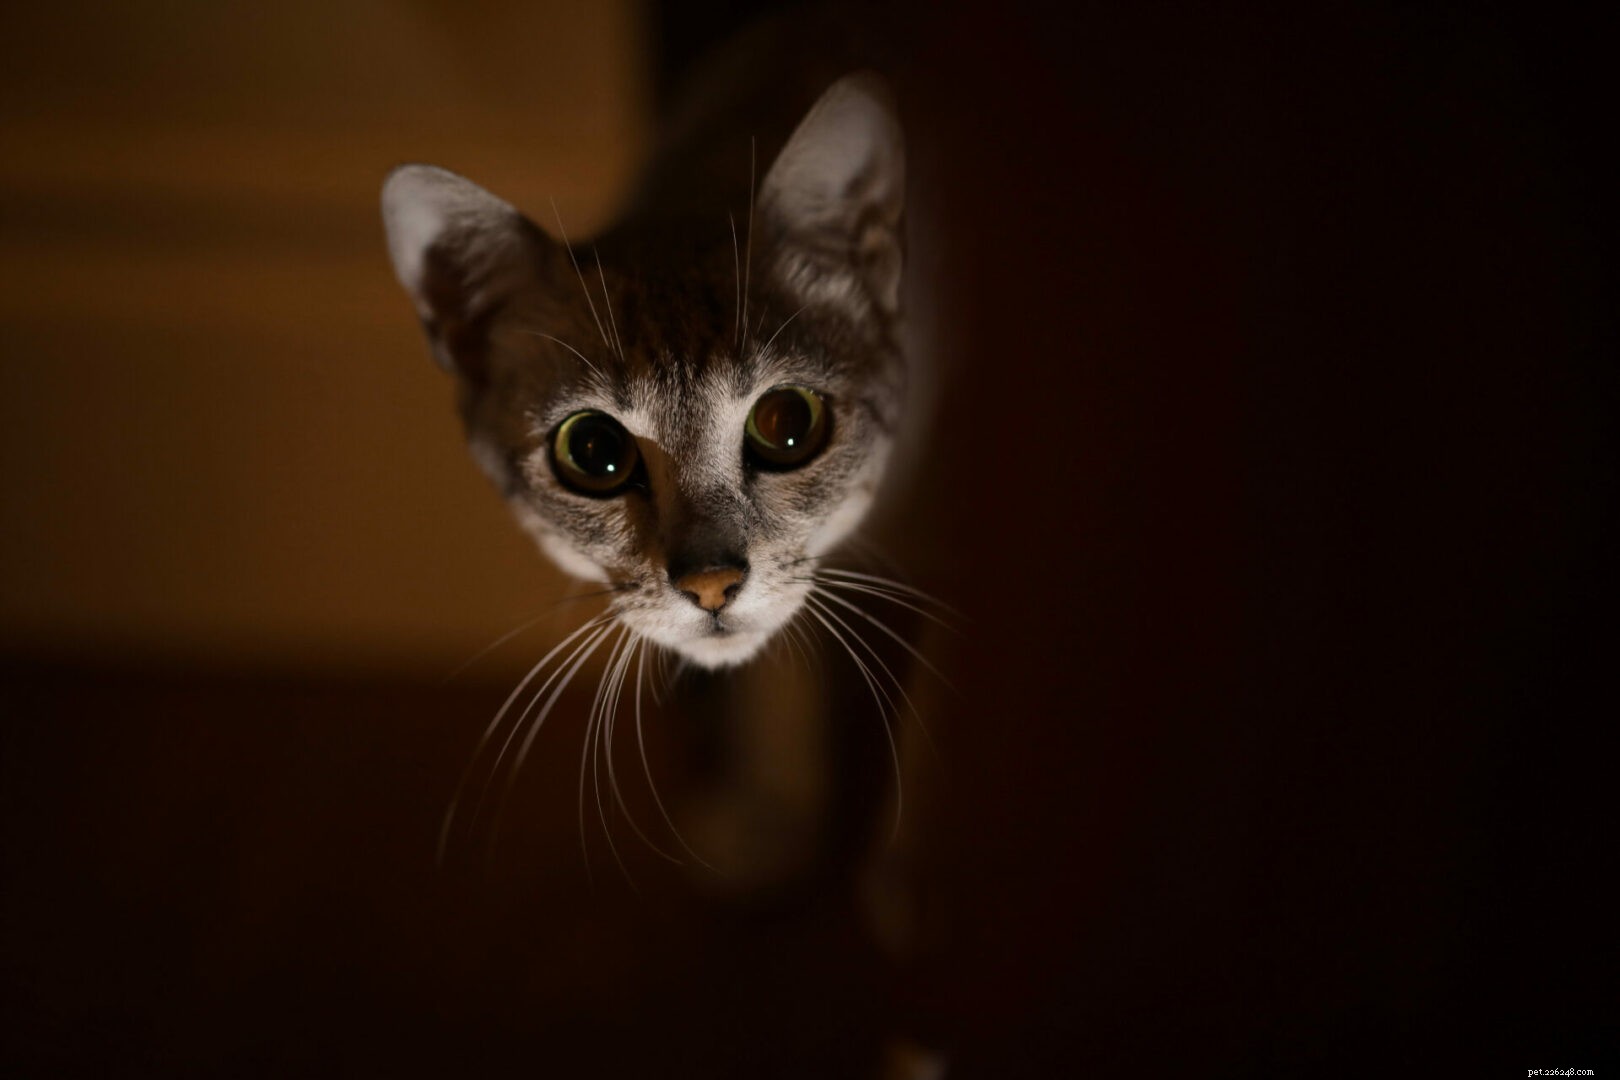 Os gatos podem sentir espíritos malignos?